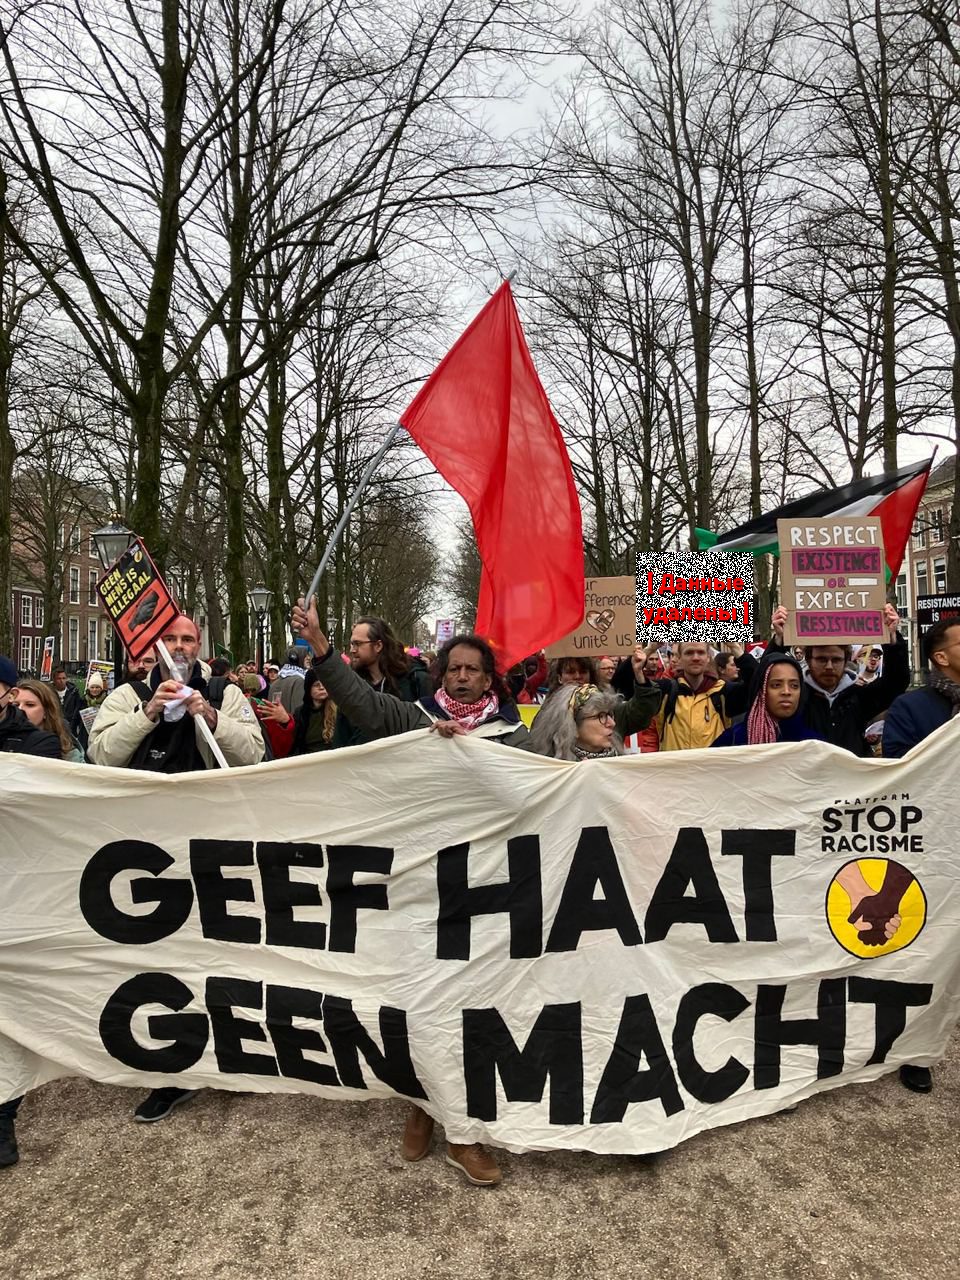 17 марта в Гааге прошла акция против формирующегося правого правительства. “Geef haat geen macht” (нидерл. не давай власть ненависти). Наш корреспондент поговорил с одним из участников протеста